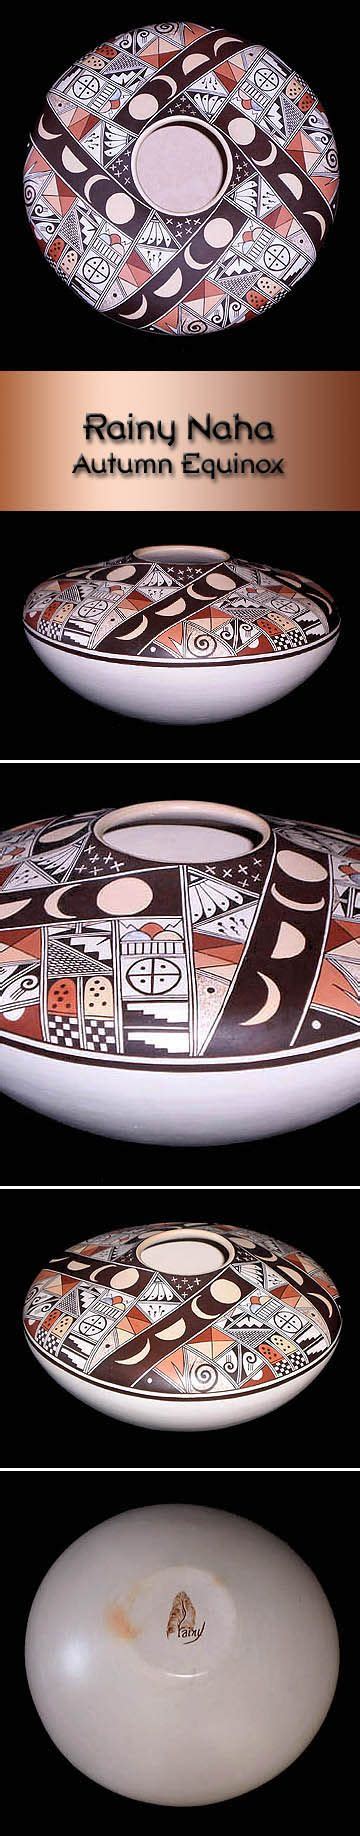 Hopi Pottery By Rainy Naha Autumn Equinox Pottery Native American